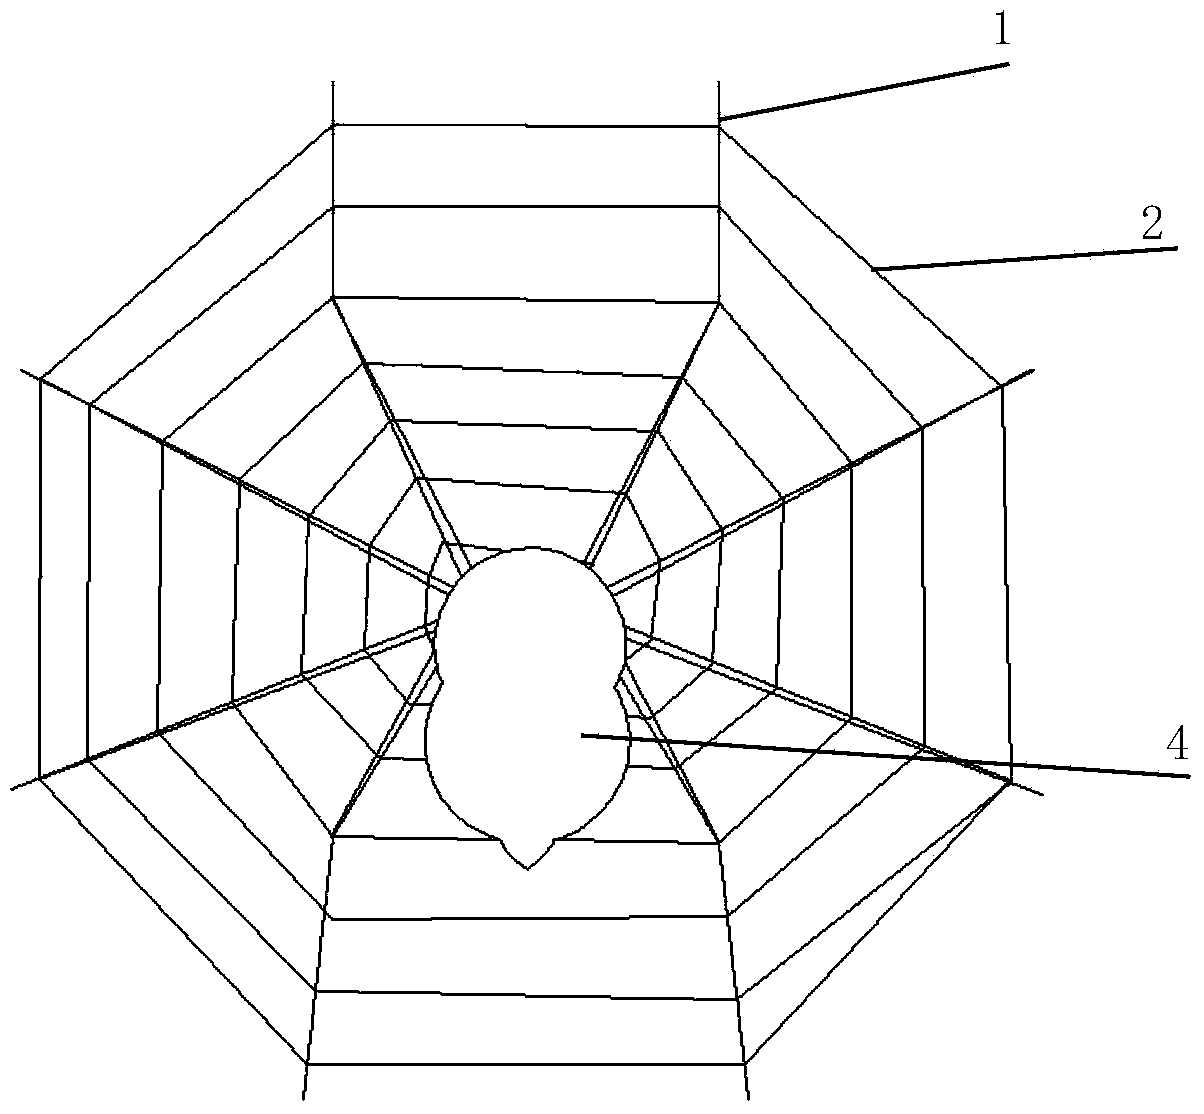 Fabricating method of cobweb-shaped alarm net